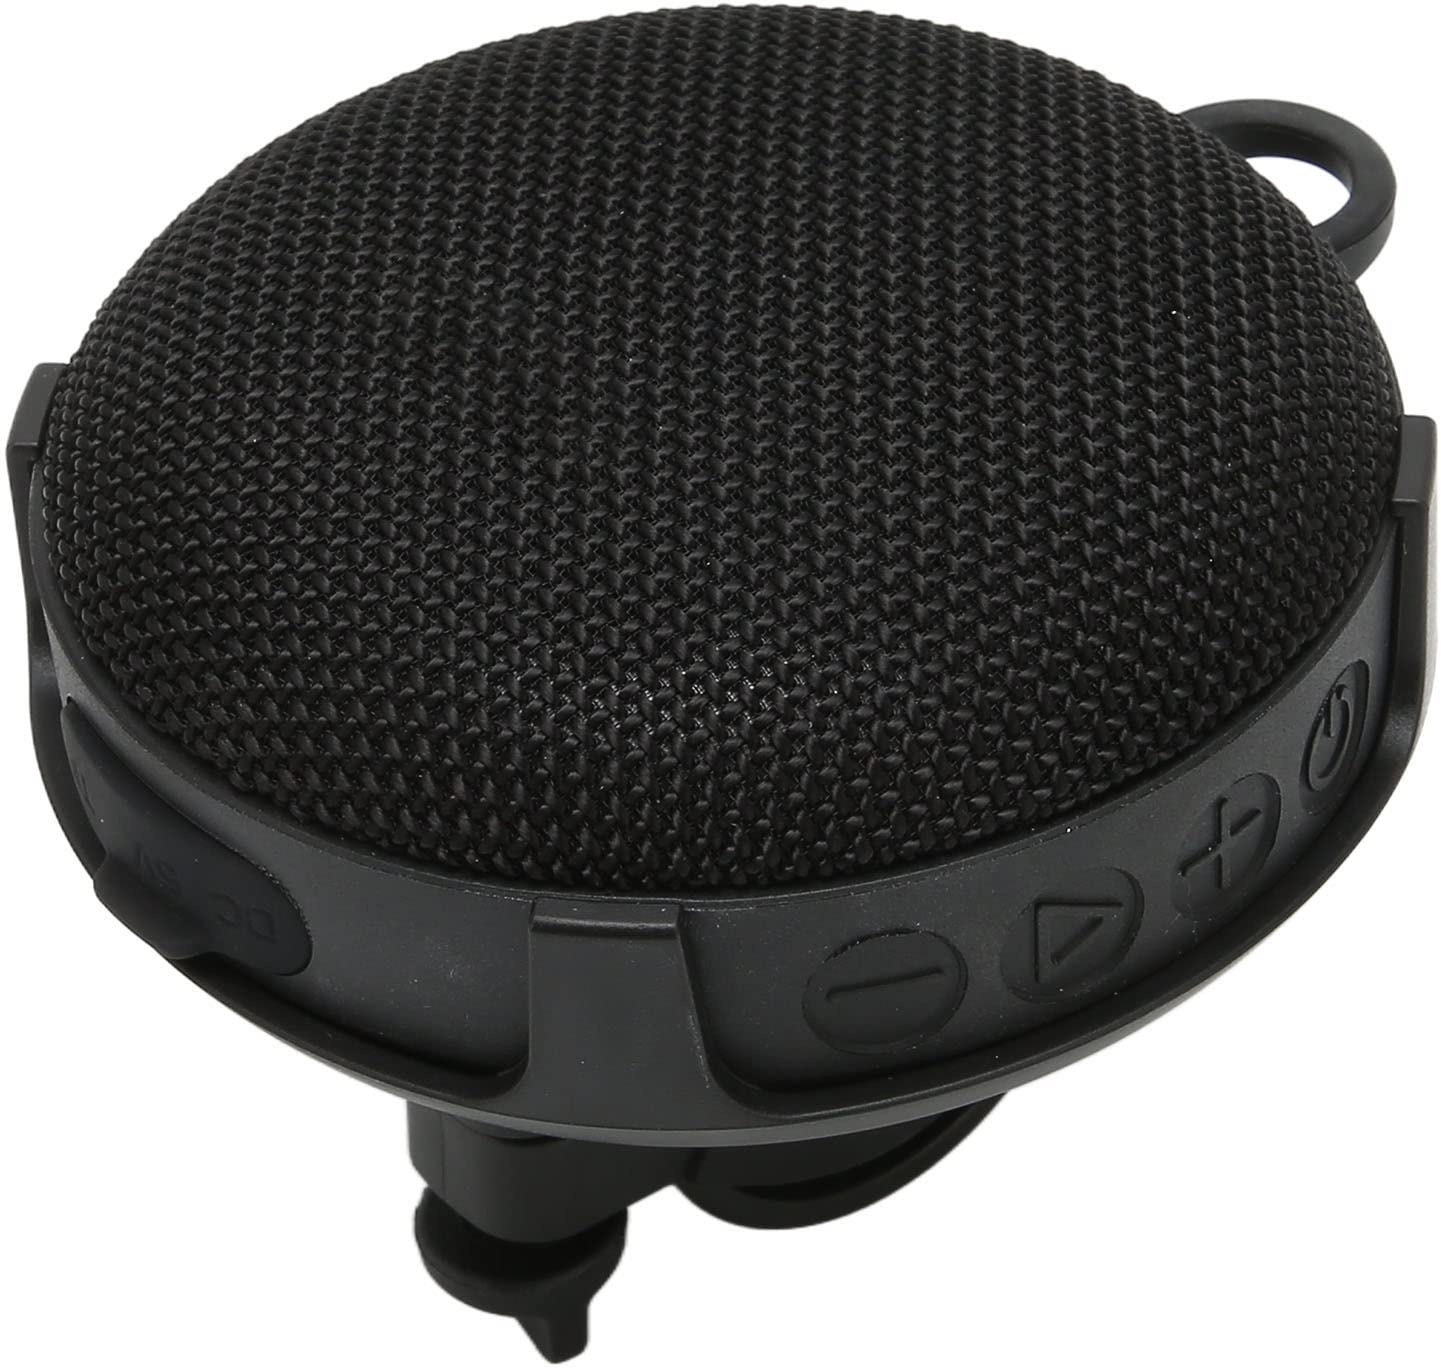 Fahrrad-Bluetooth-Lautsprecher – Wasserdicht, Tragbar, High-Definition-Surround-Sound, 2 Wiedergabemodi, Echte Kabellose Stereo-Verbindung für Outdoor-Abenteuer (Schwarz)